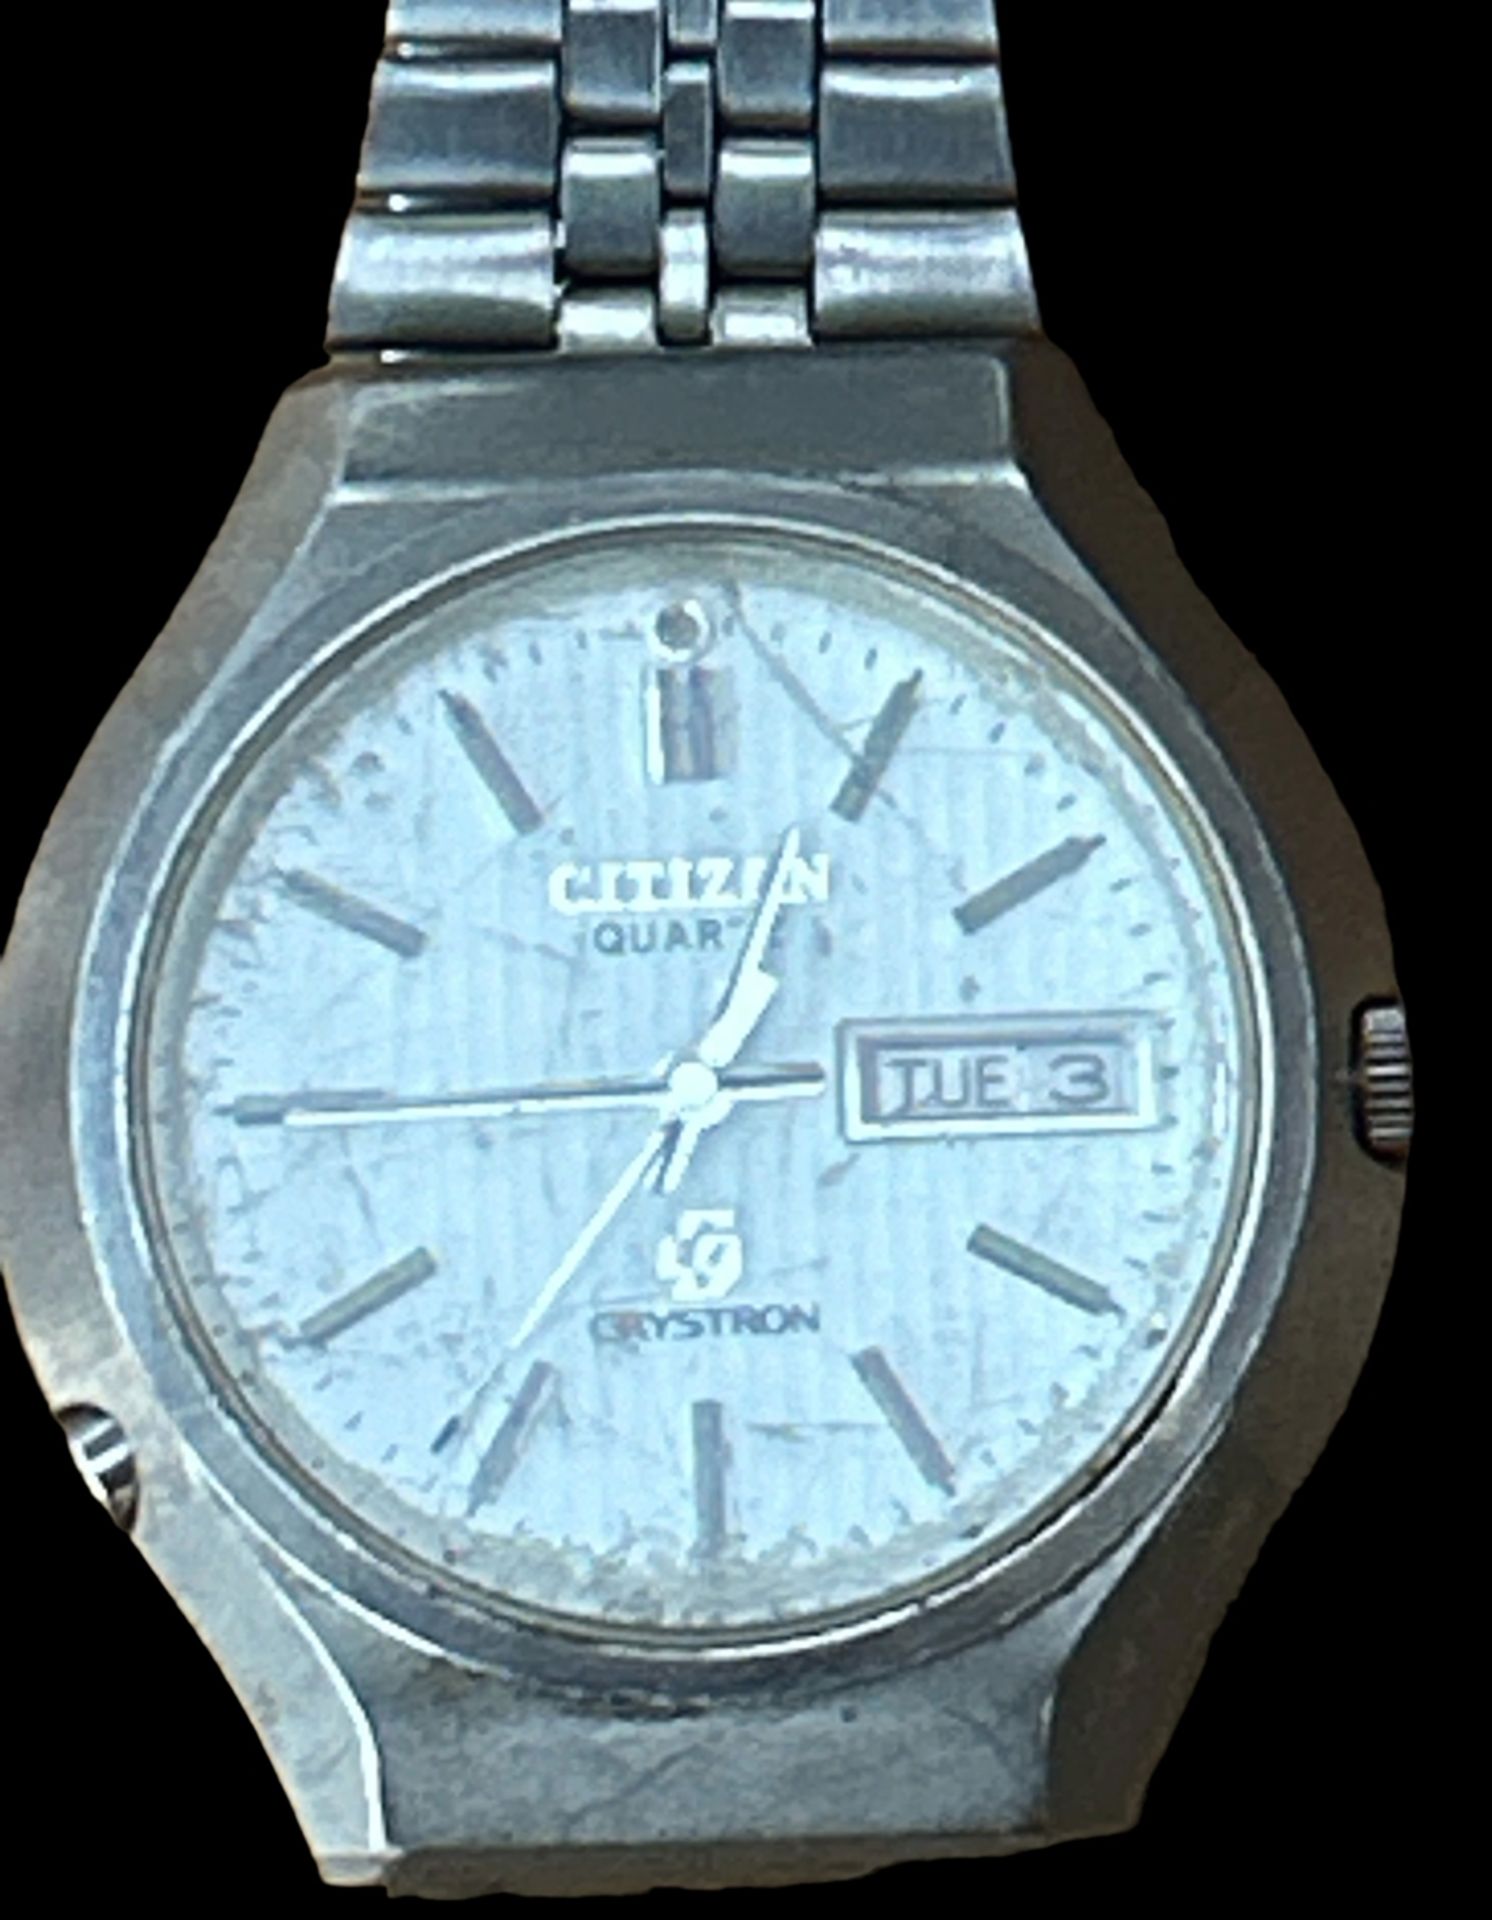 HAU "Citizen Crystron" frühe Quartz Armbanduhr, porig. Stahlband, Werk nicht überprüft - Bild 2 aus 3